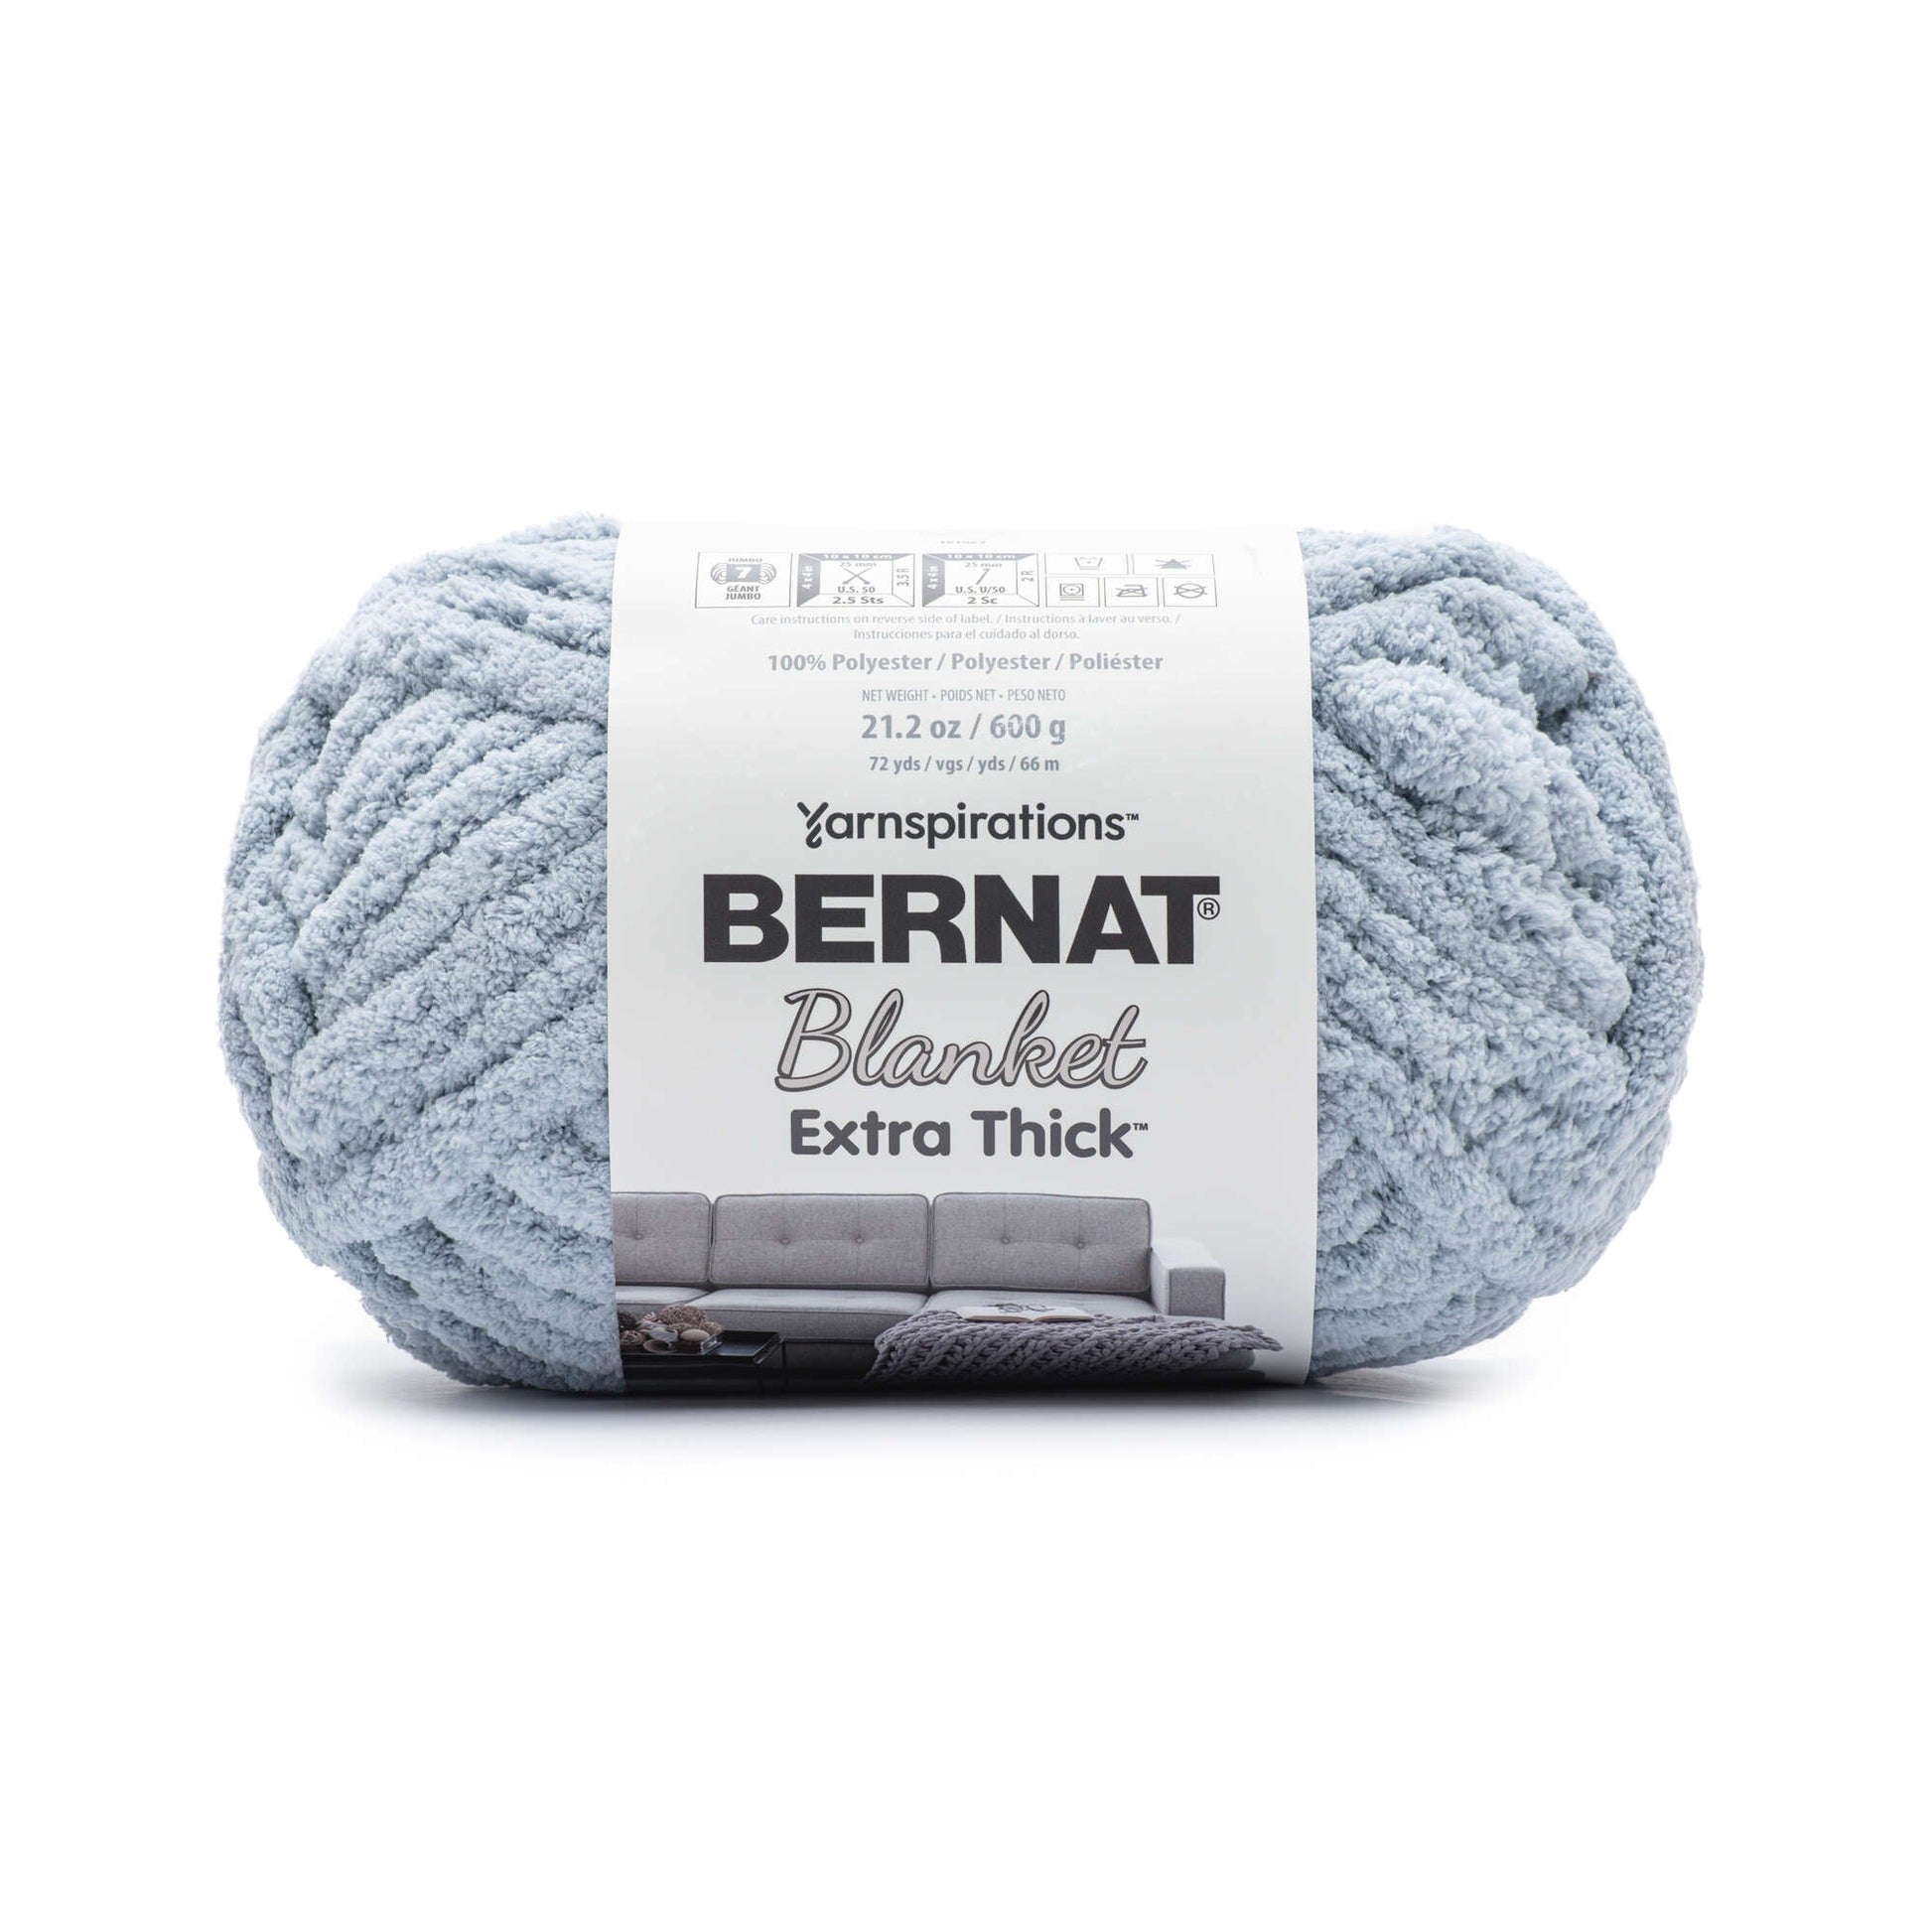 Bernat Blanket Extra Thick Yarn (600g/21.2oz) - Discontinued Shades Fog Blue